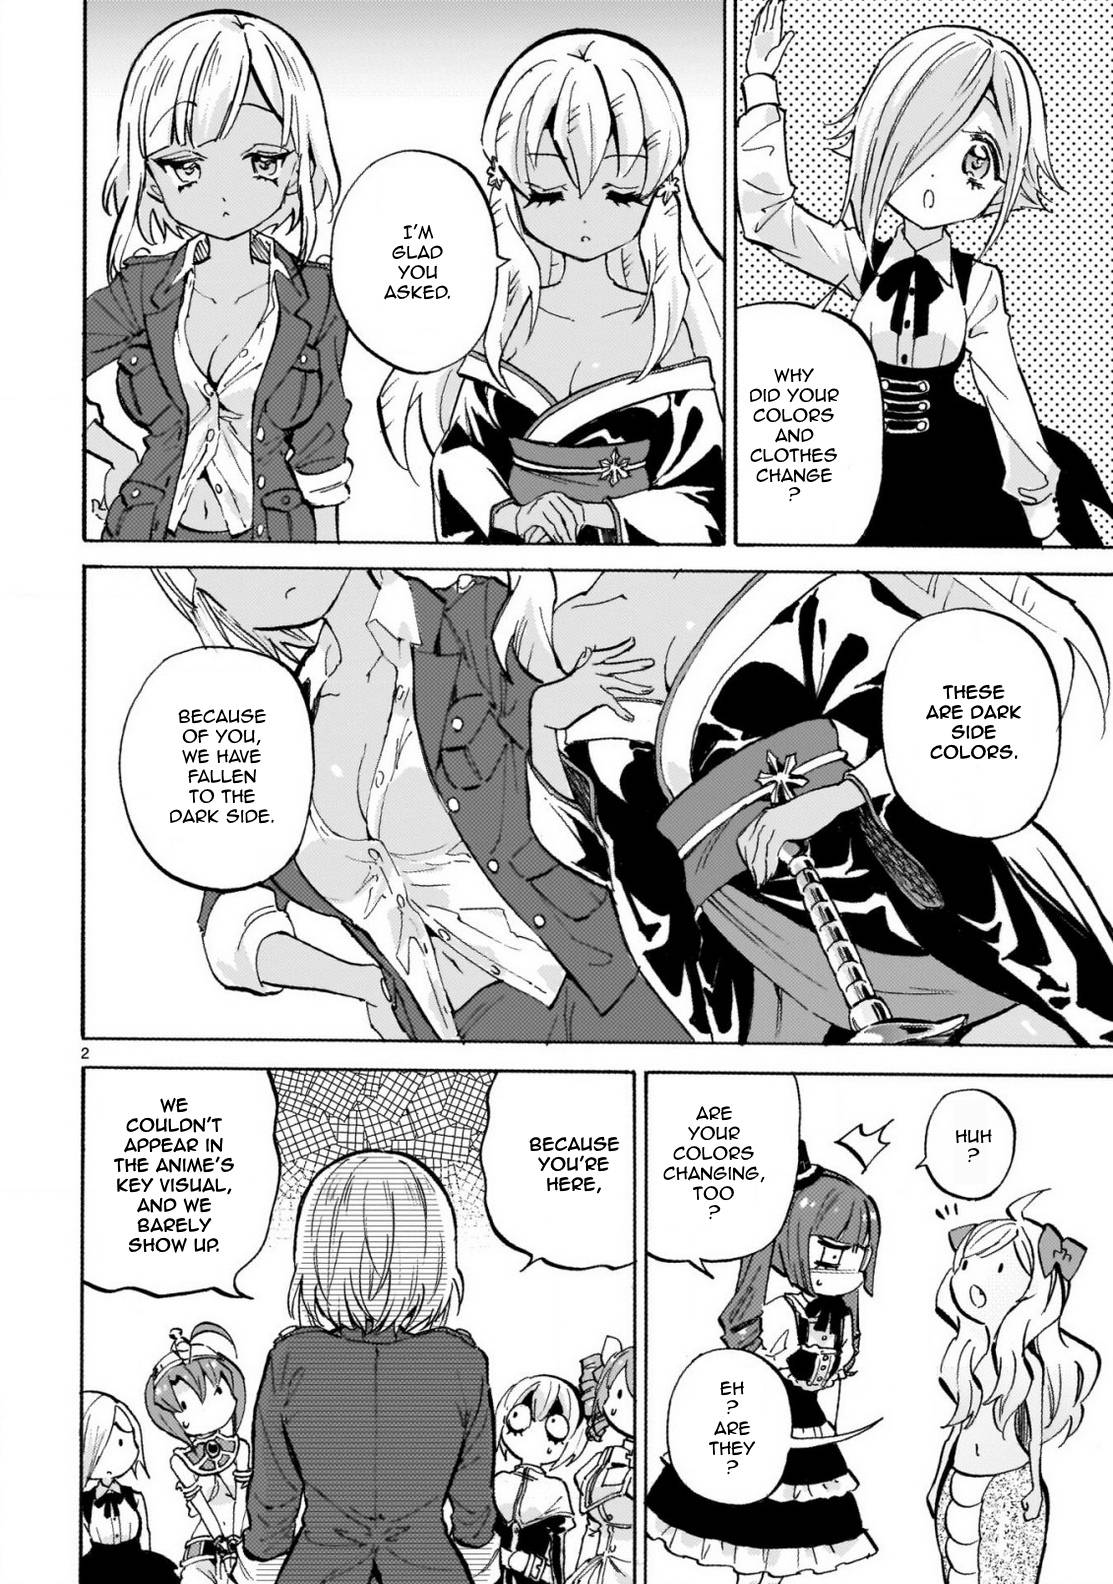 Jashin-chan Dropkick chapter 239 page 2